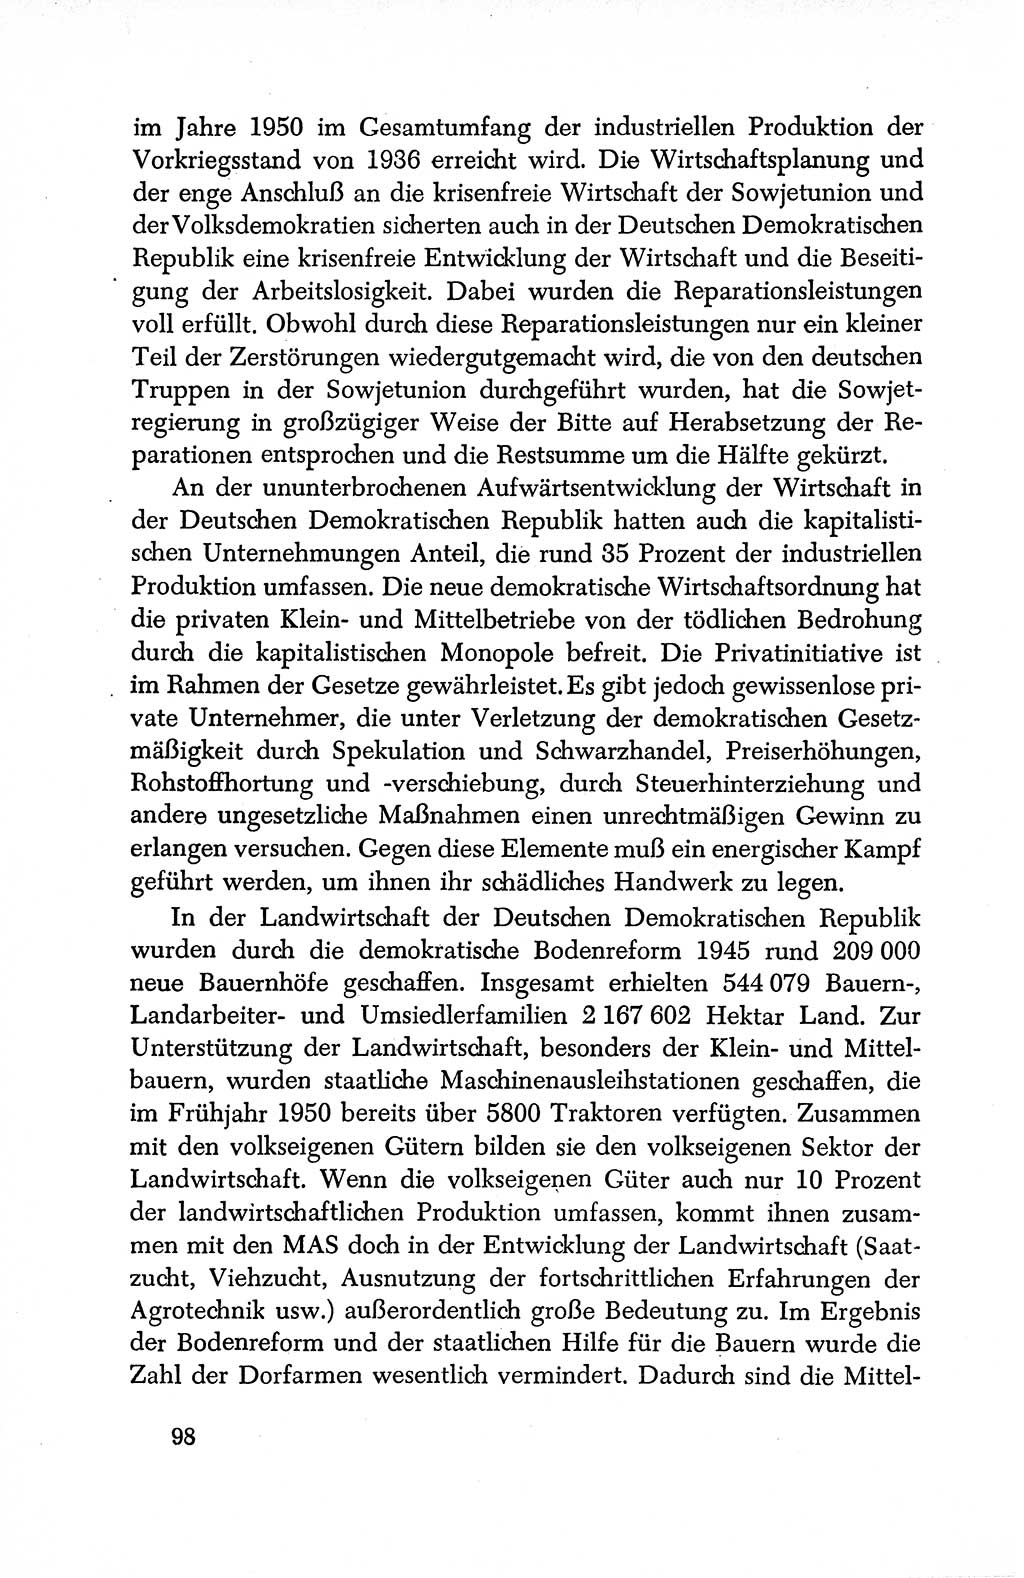 Dokumente der Sozialistischen Einheitspartei Deutschlands (SED) [Deutsche Demokratische Republik (DDR)] 1950-1952, Seite 98 (Dok. SED DDR 1950-1952, S. 98)